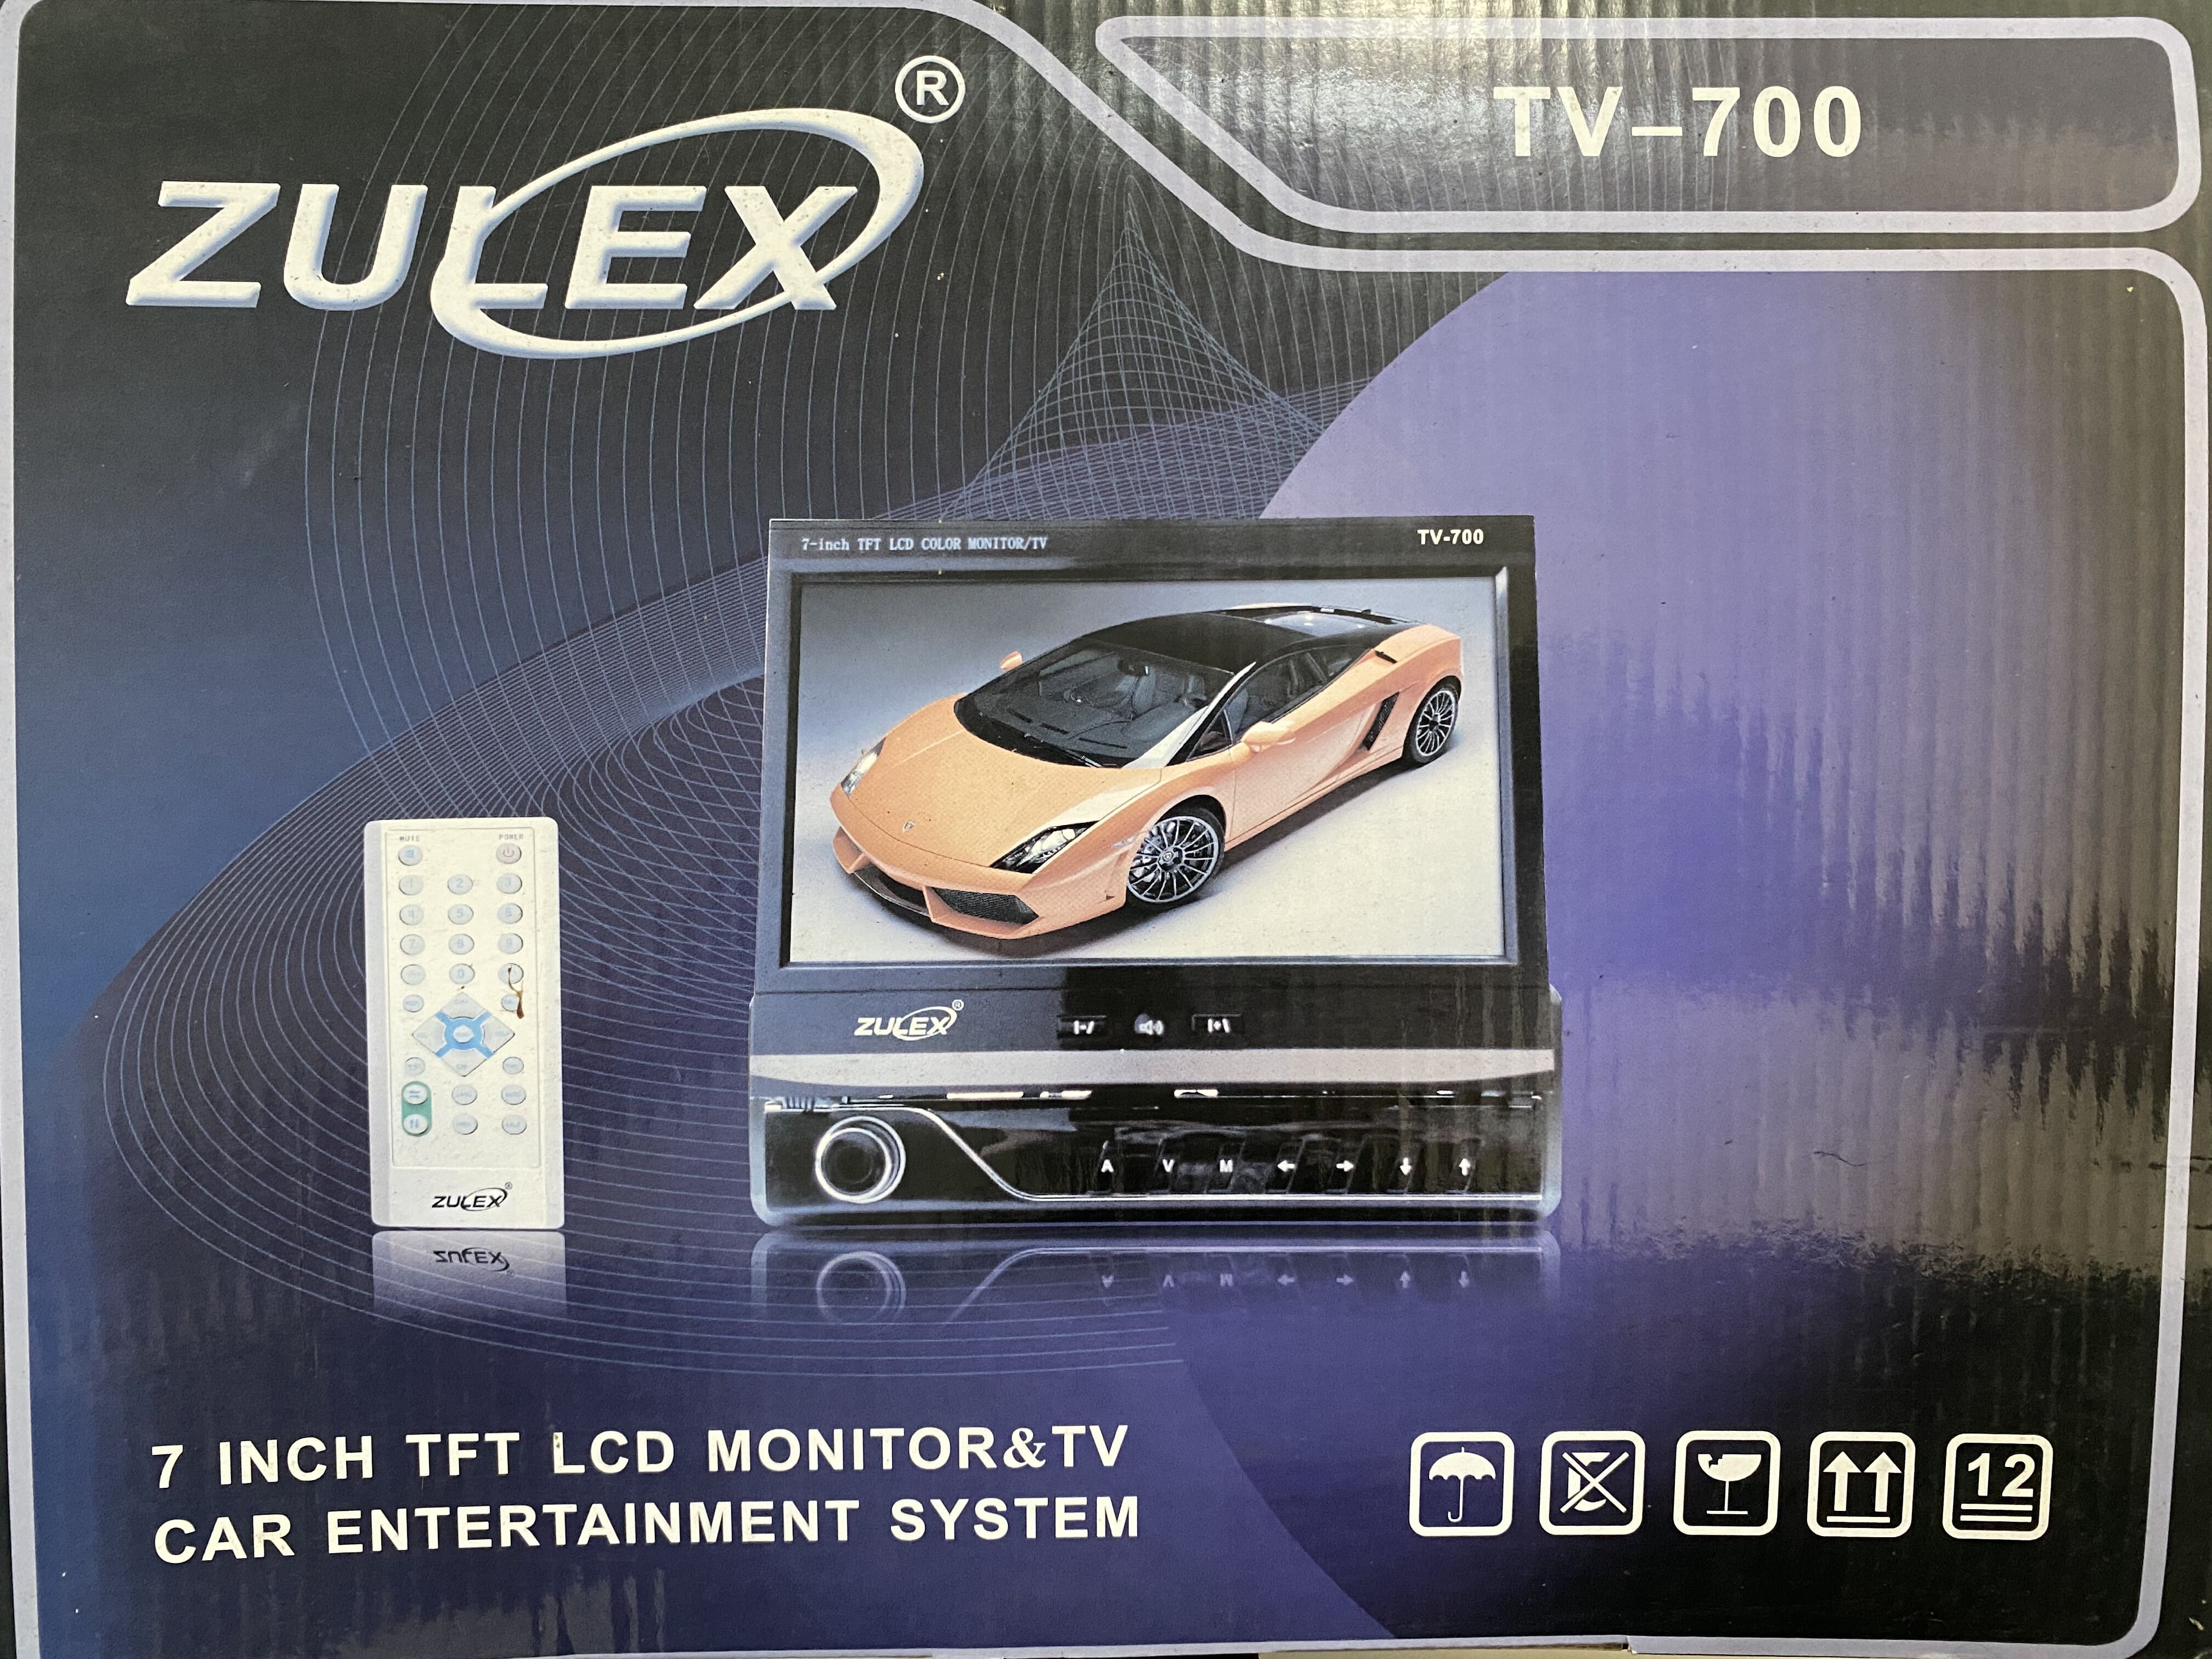 จอทีวี ติดรถยนต์ จอป็อบอัพ เครื่องเล่น 1 DIN จอสไลค์ ZULEX TV-700  7